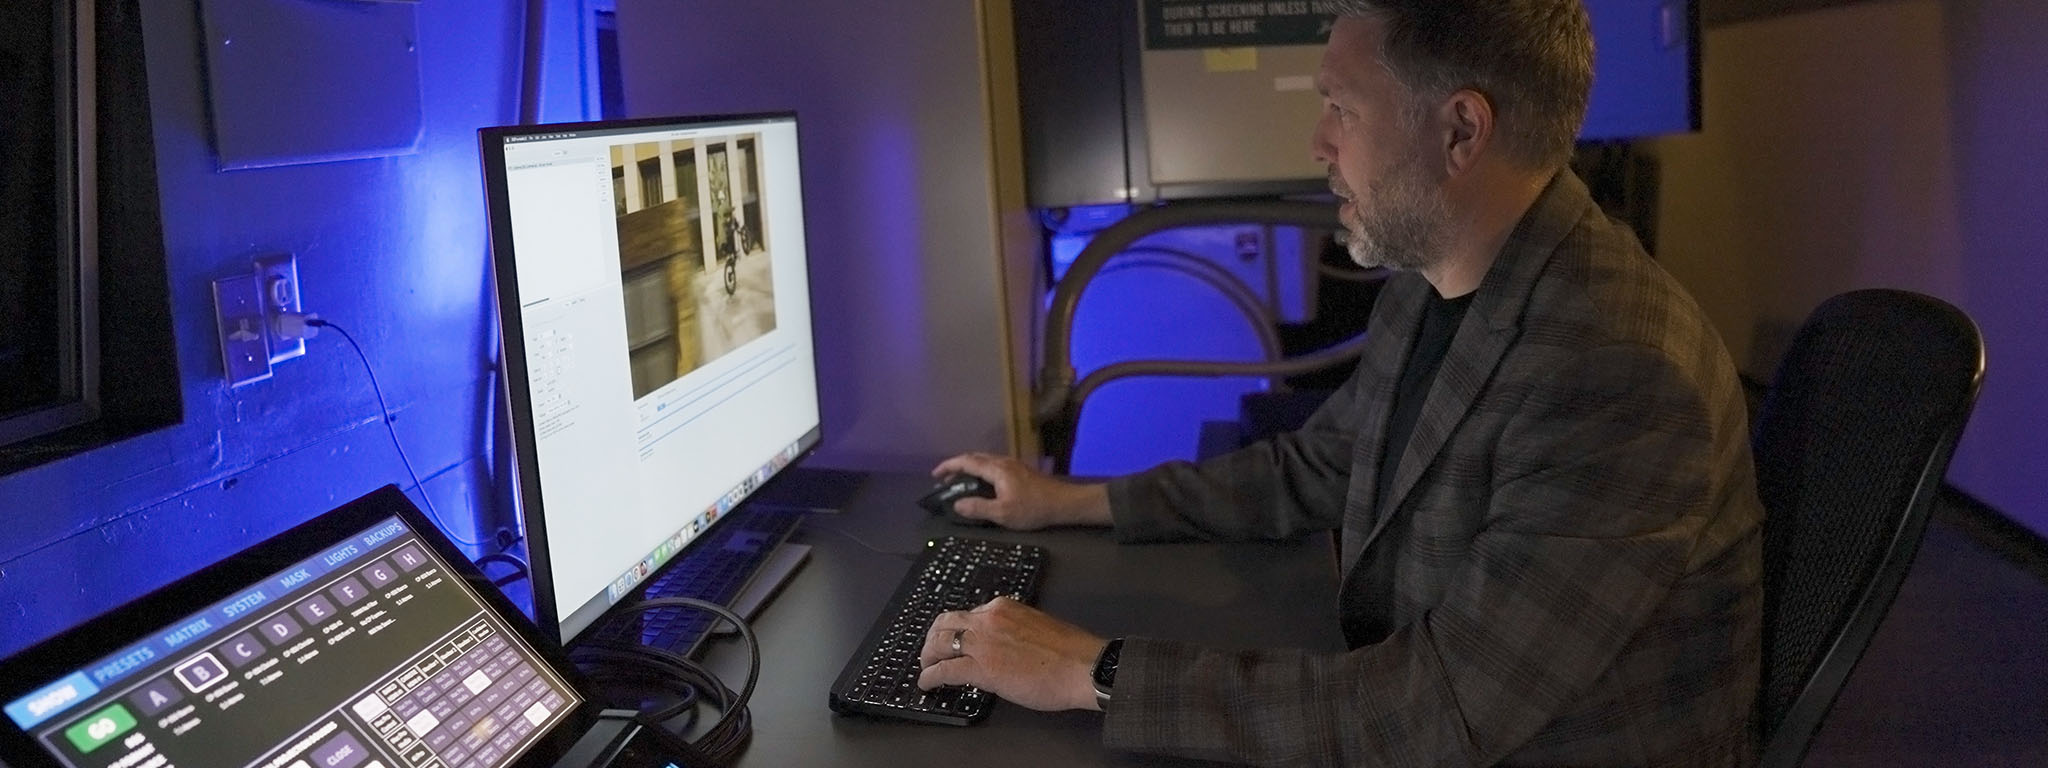 컴퓨터 모니터 앞에 디지털 영사기 Ryan Carpenter가 앉아 있습니다.